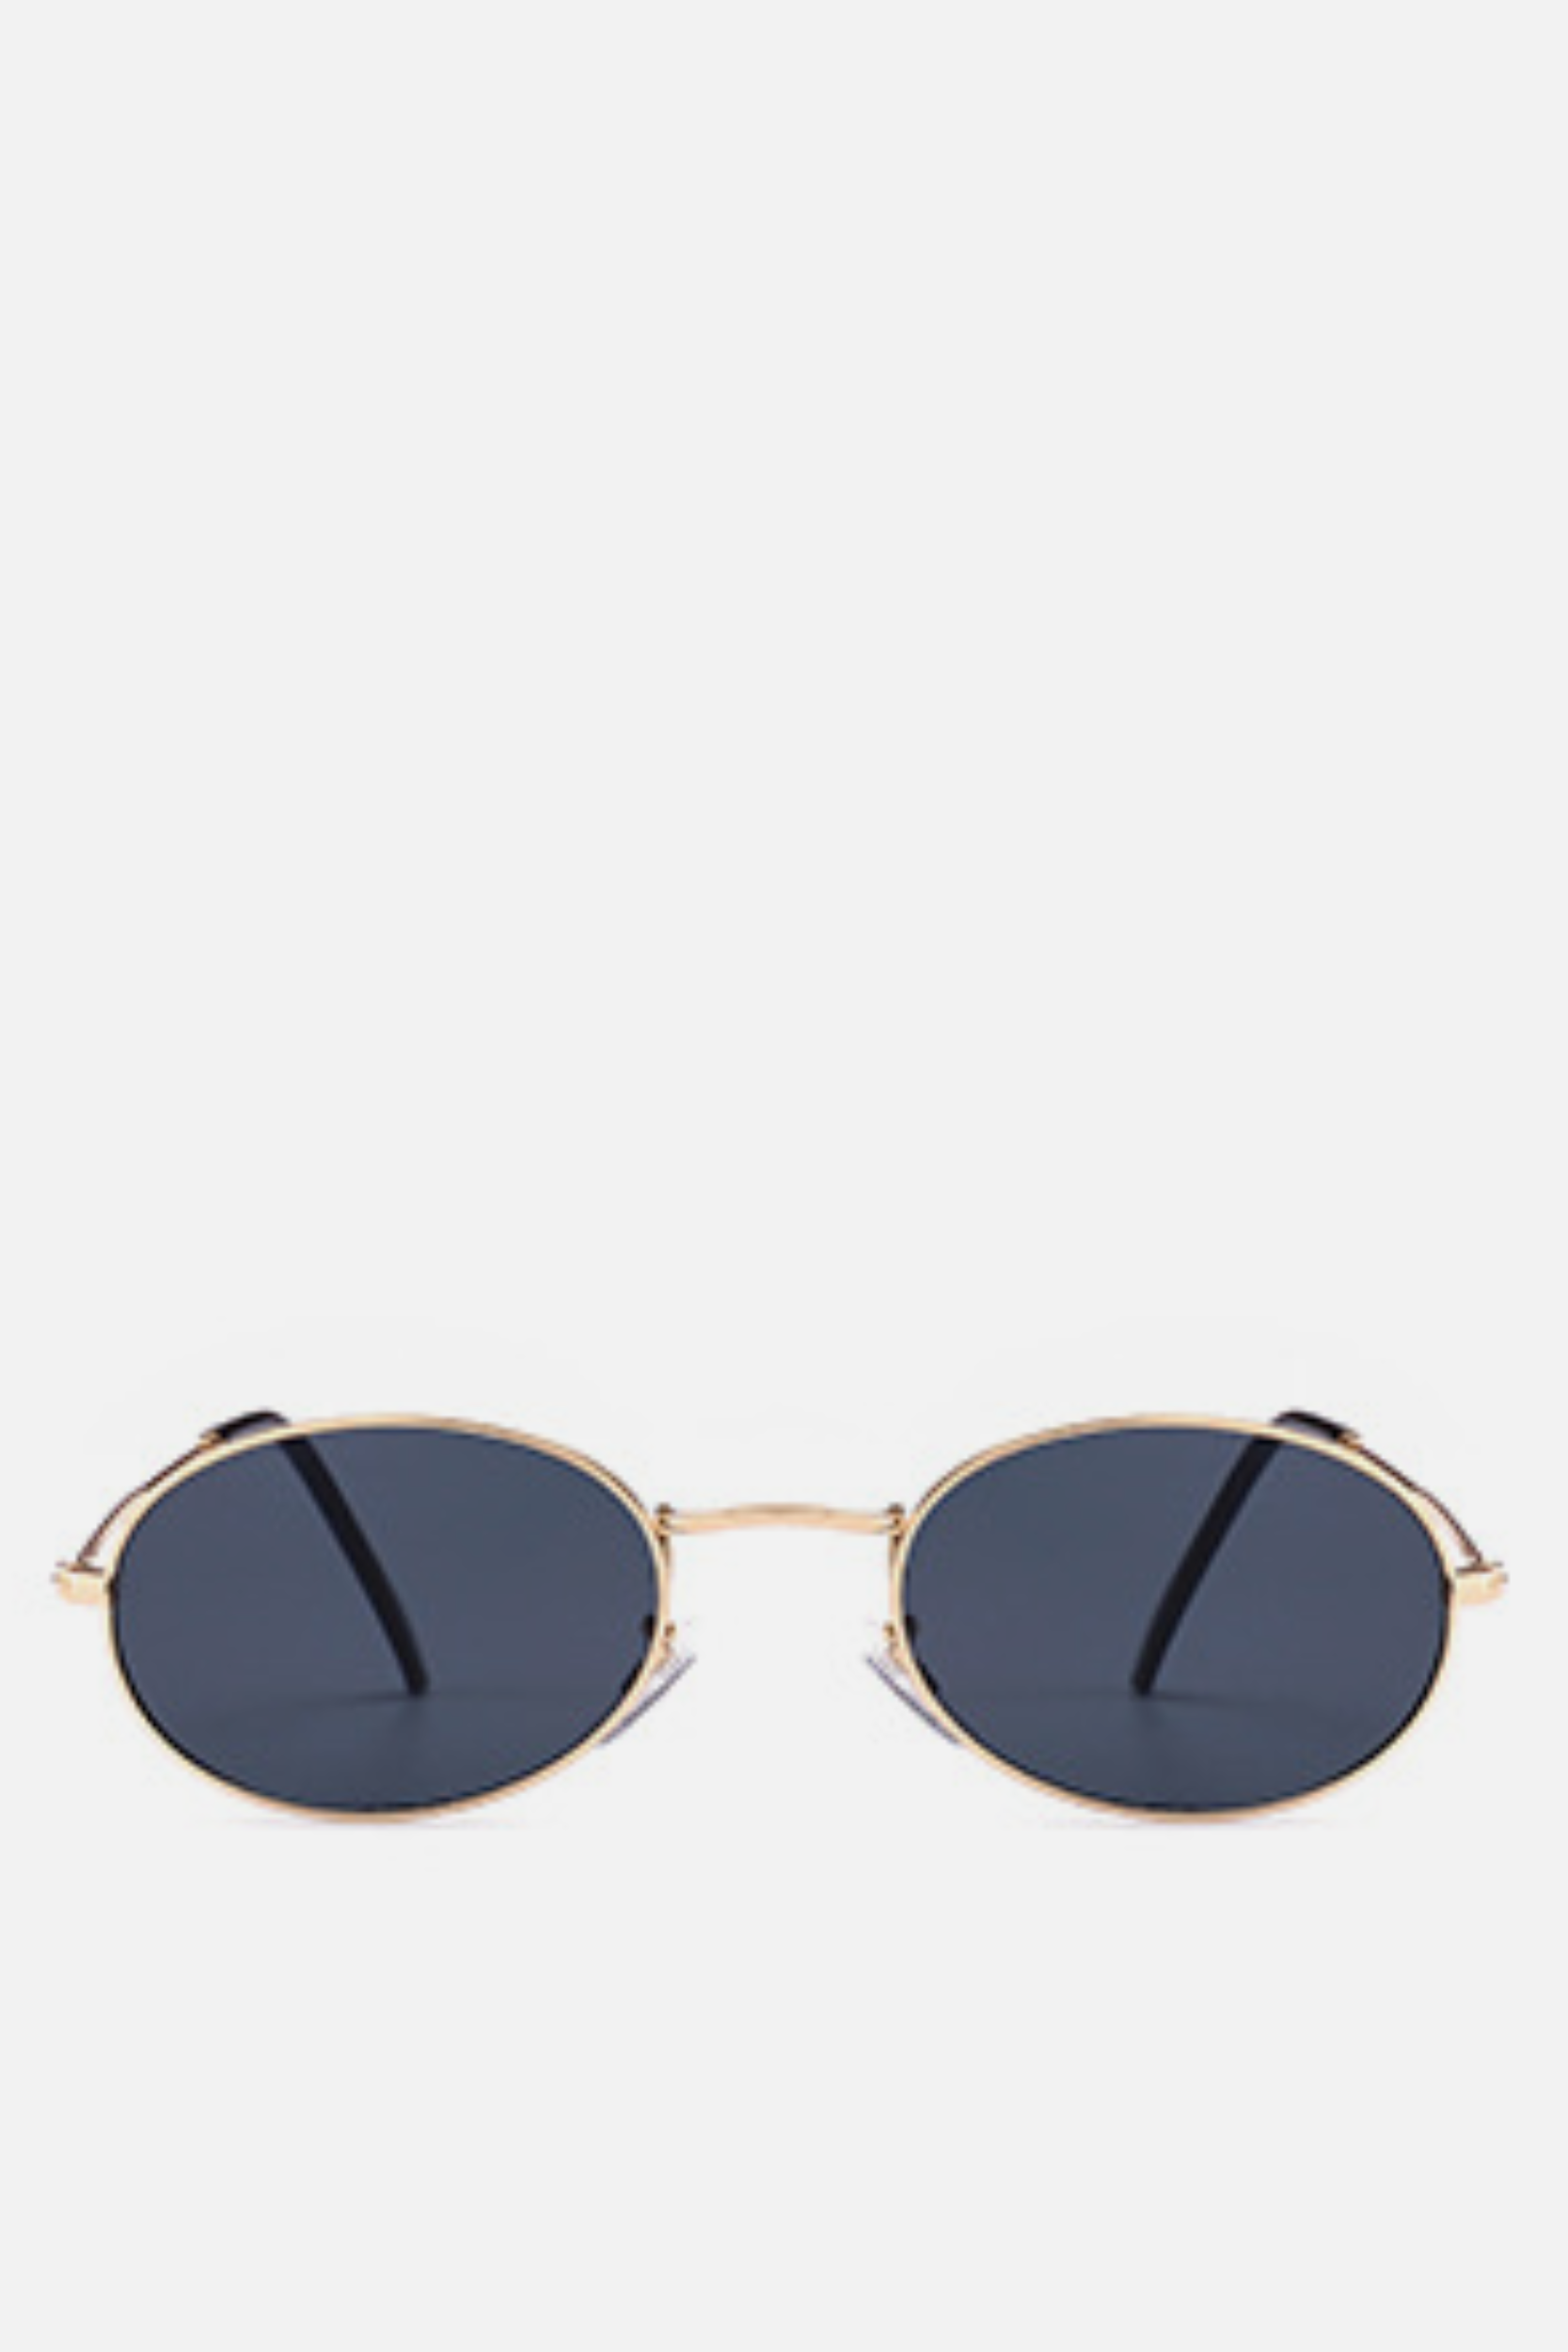 FIJI Black Oval Sunglasses